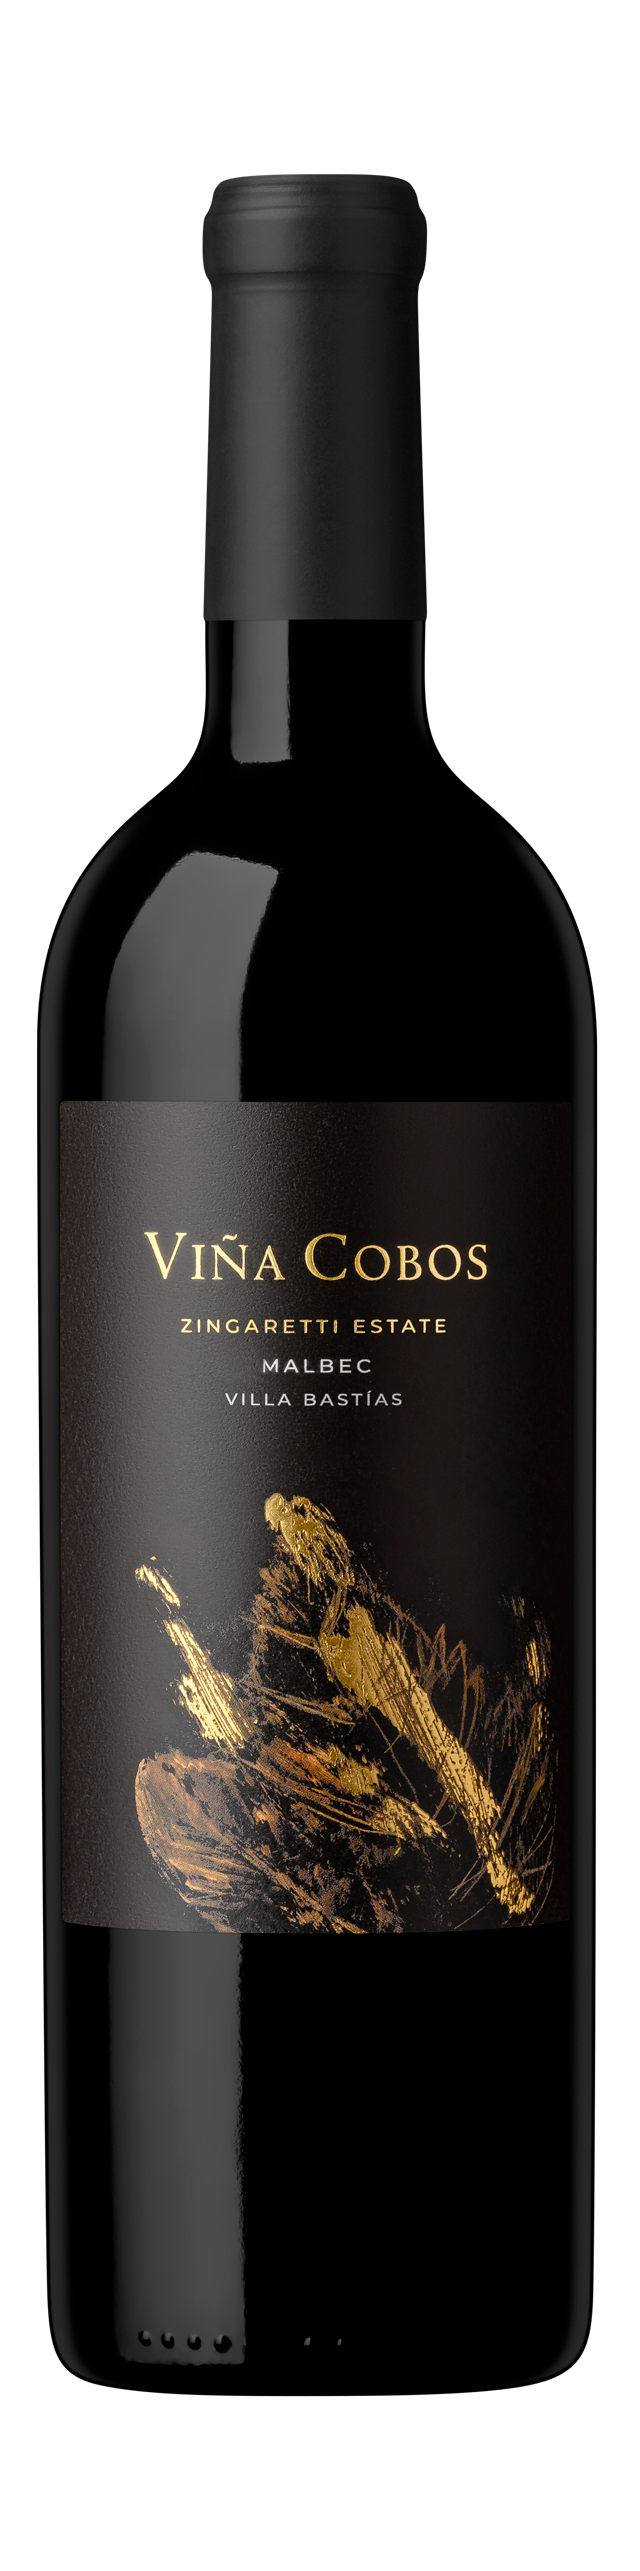 Bottle shot - Viña Cobos, Zingaretti Estate Malbec, Valle de Uco, Mendoza, Argentina